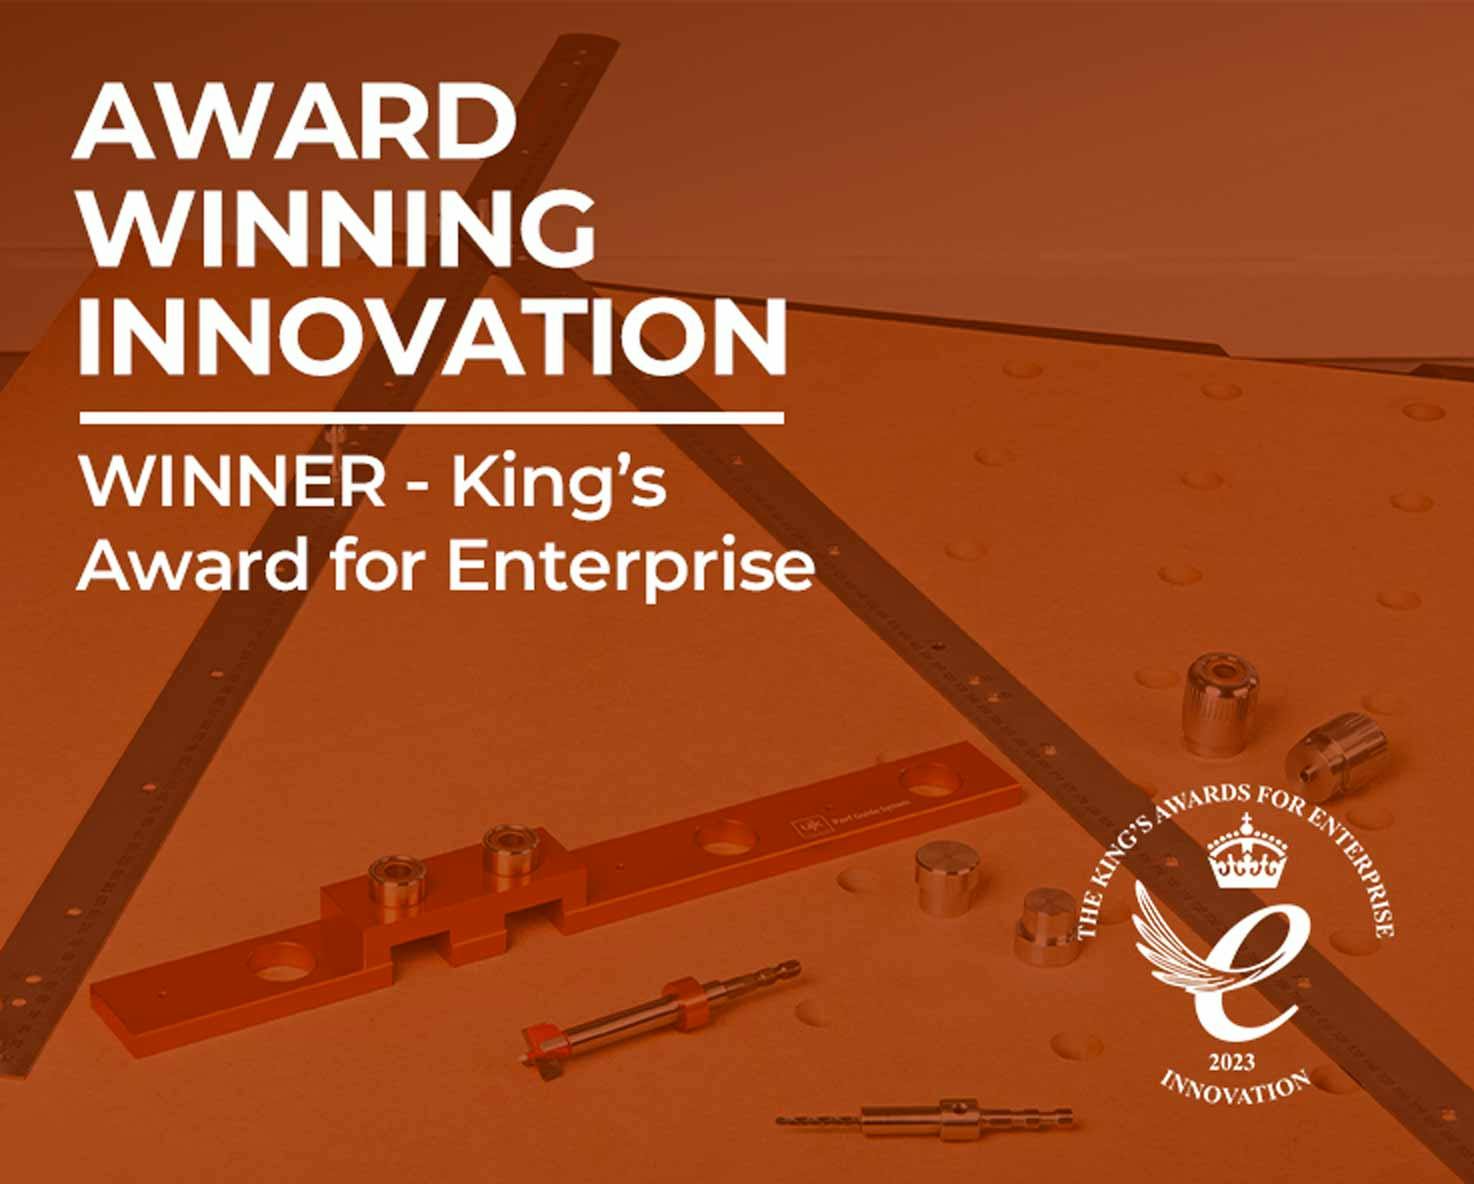 The King’s Award for Enterprise